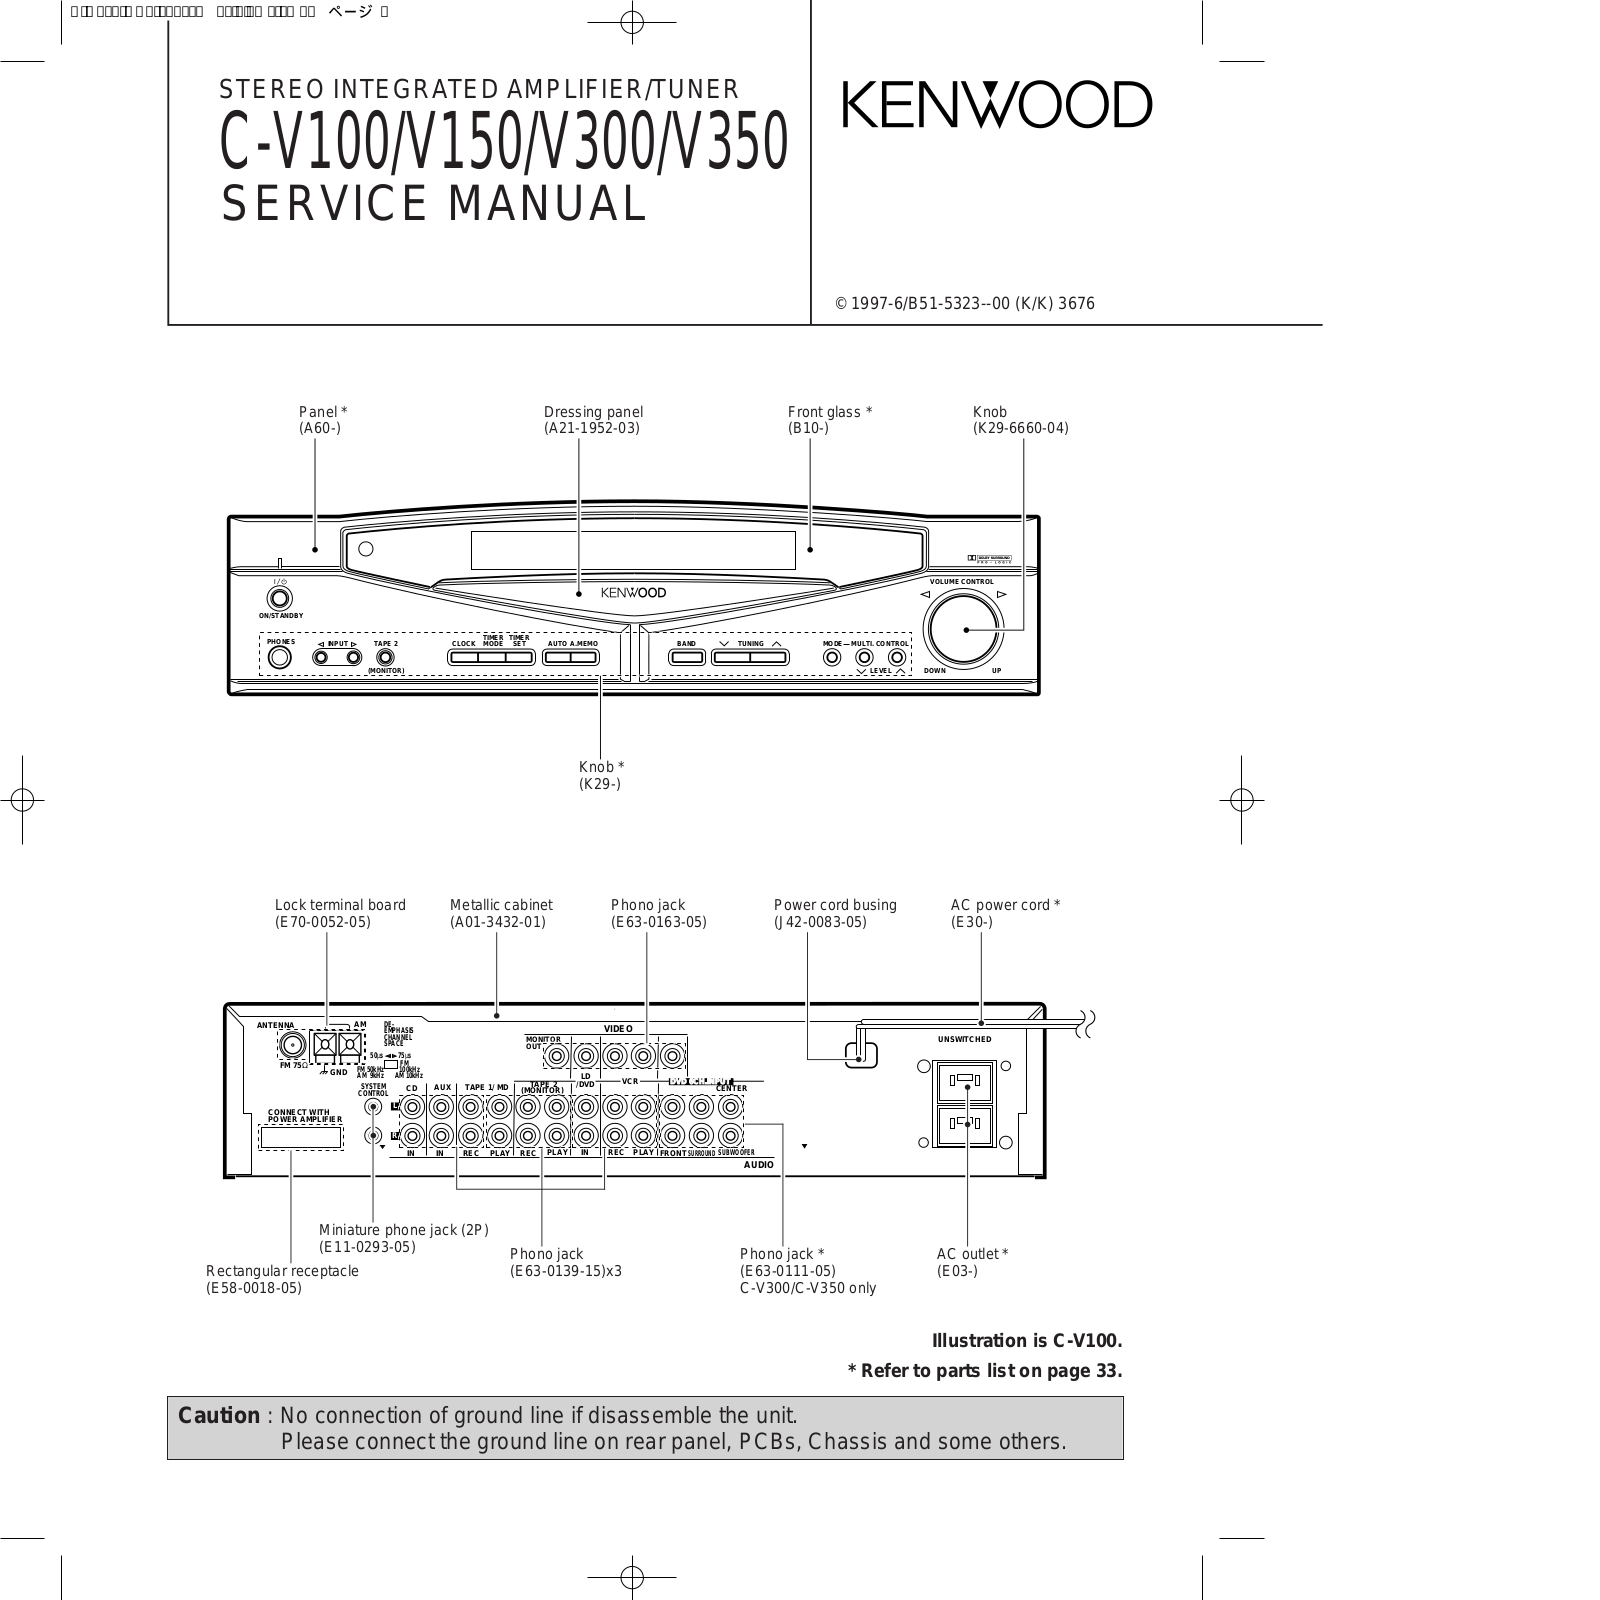 Kenwood C-V100, C-V150, C-V300, C-V350 Schematic